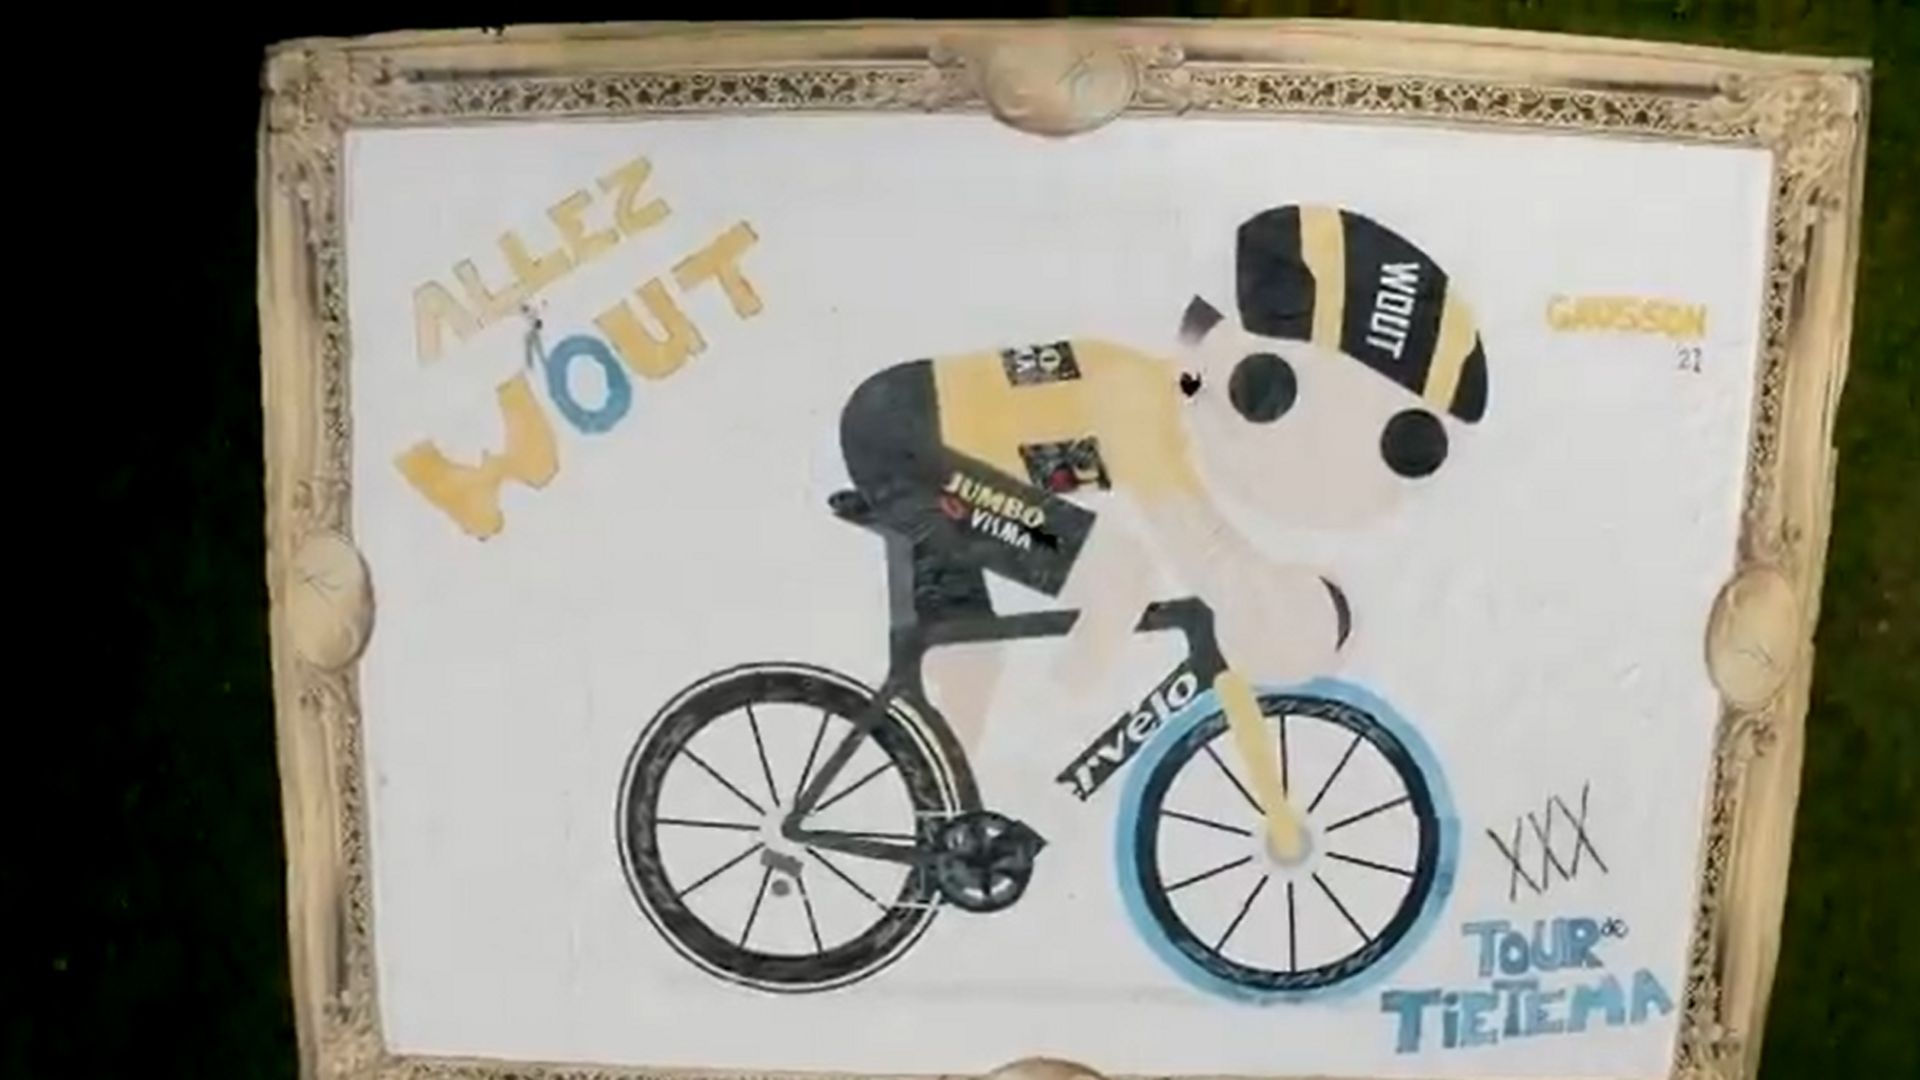 Un record du monde et un tableau XXL "offerts" à Wout van Aert sur la route du Tour de France.